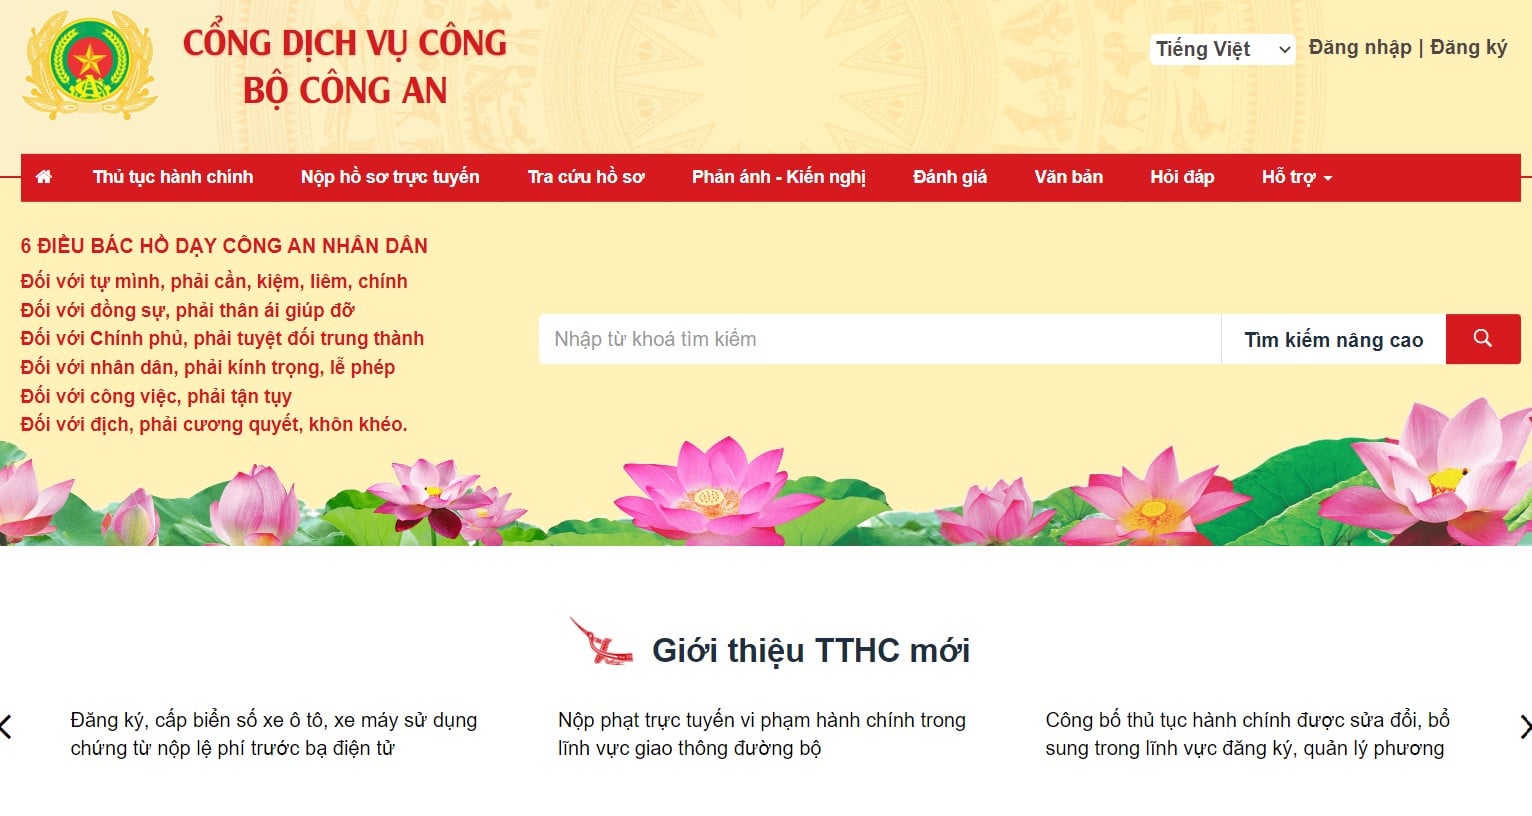 Thủ tục đăng ký làm hộ chiếu (Passport) online tại Khánh Hòa